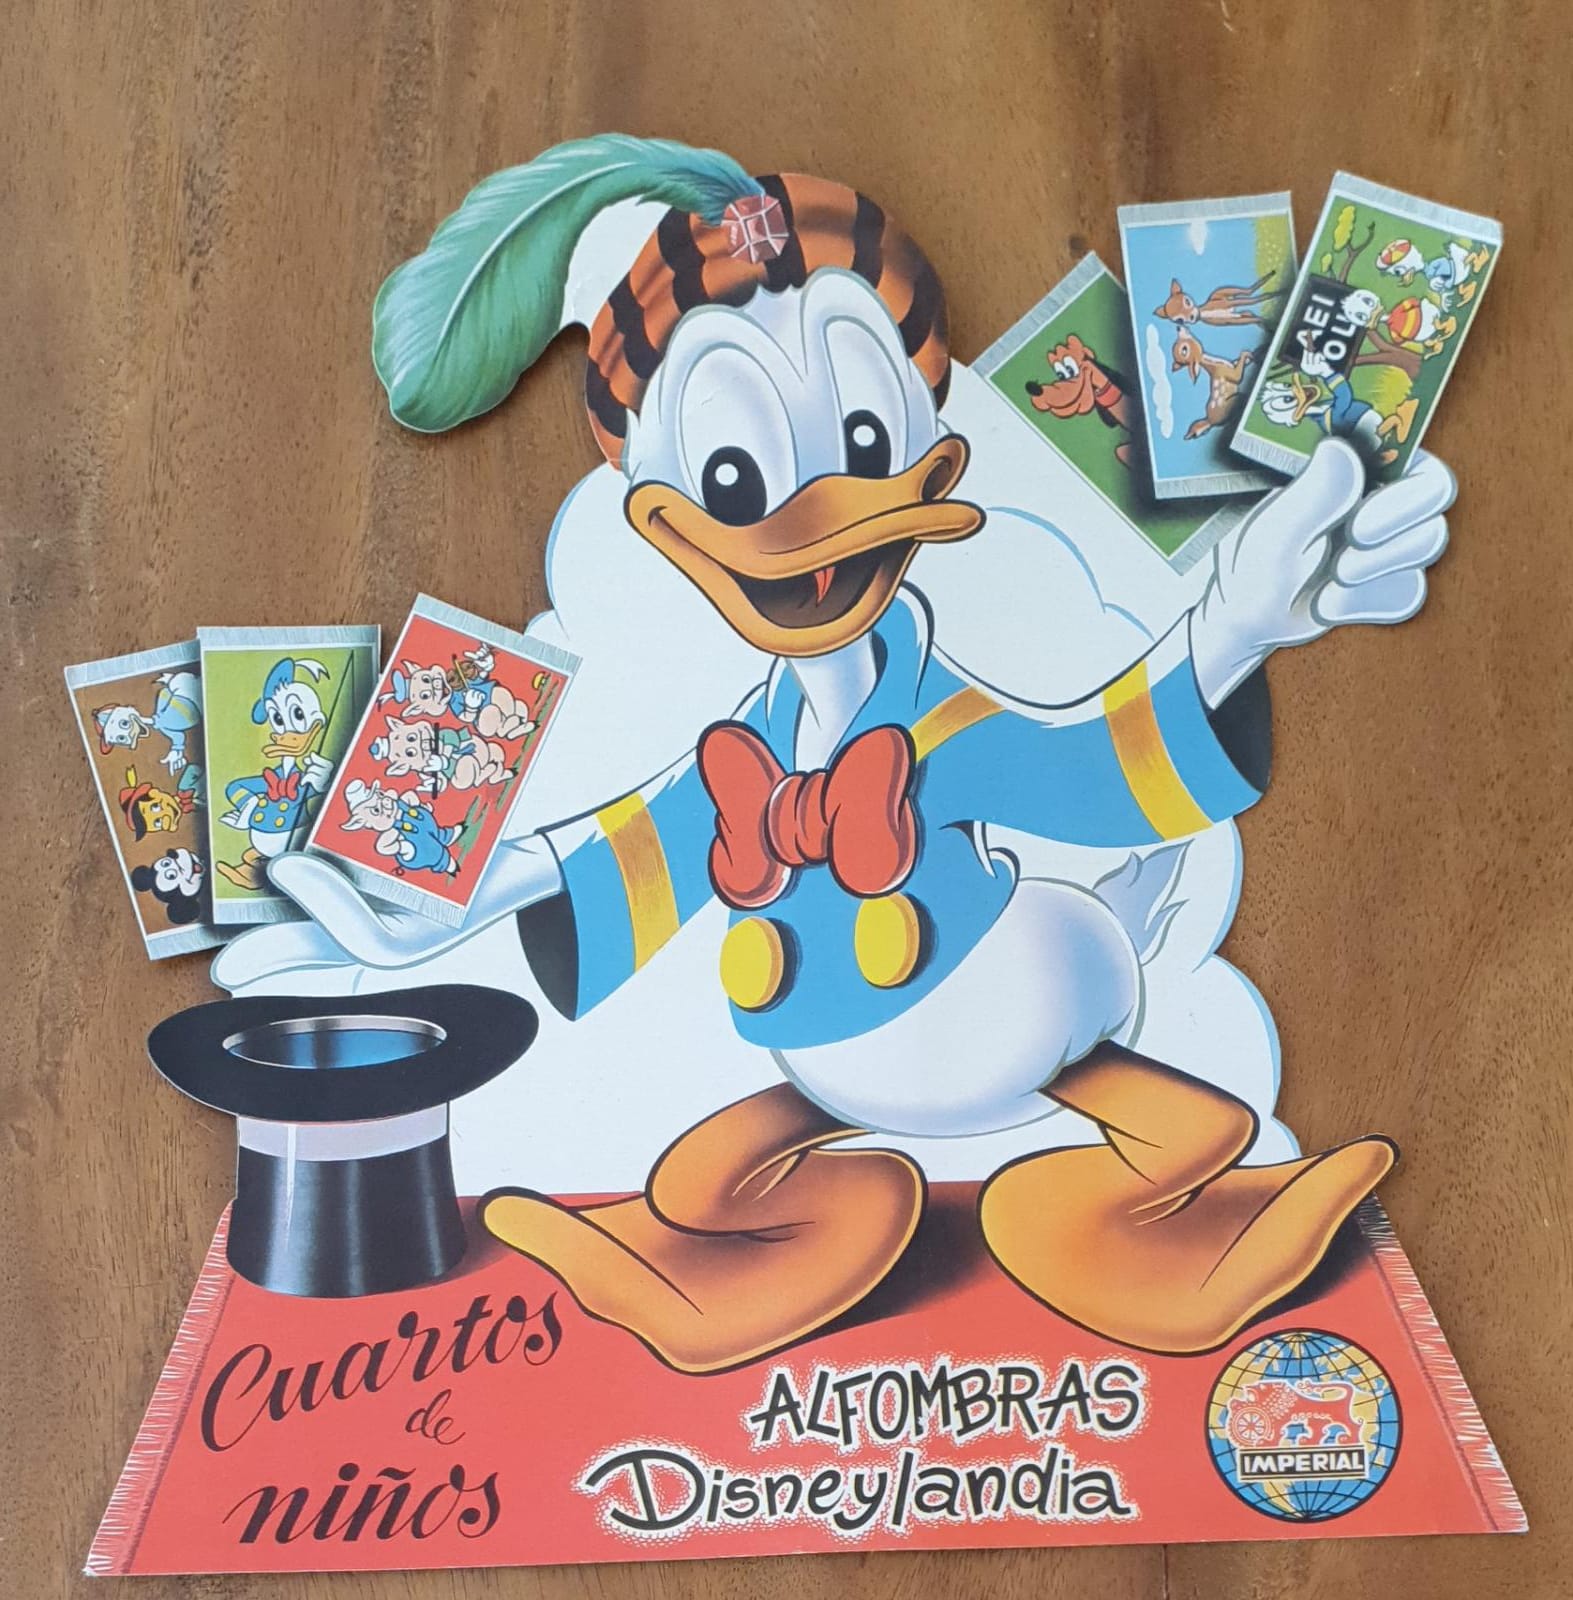 Cartel Troquelado (37x34) Alfombras Disneylandia de Imperial. Años 50-60